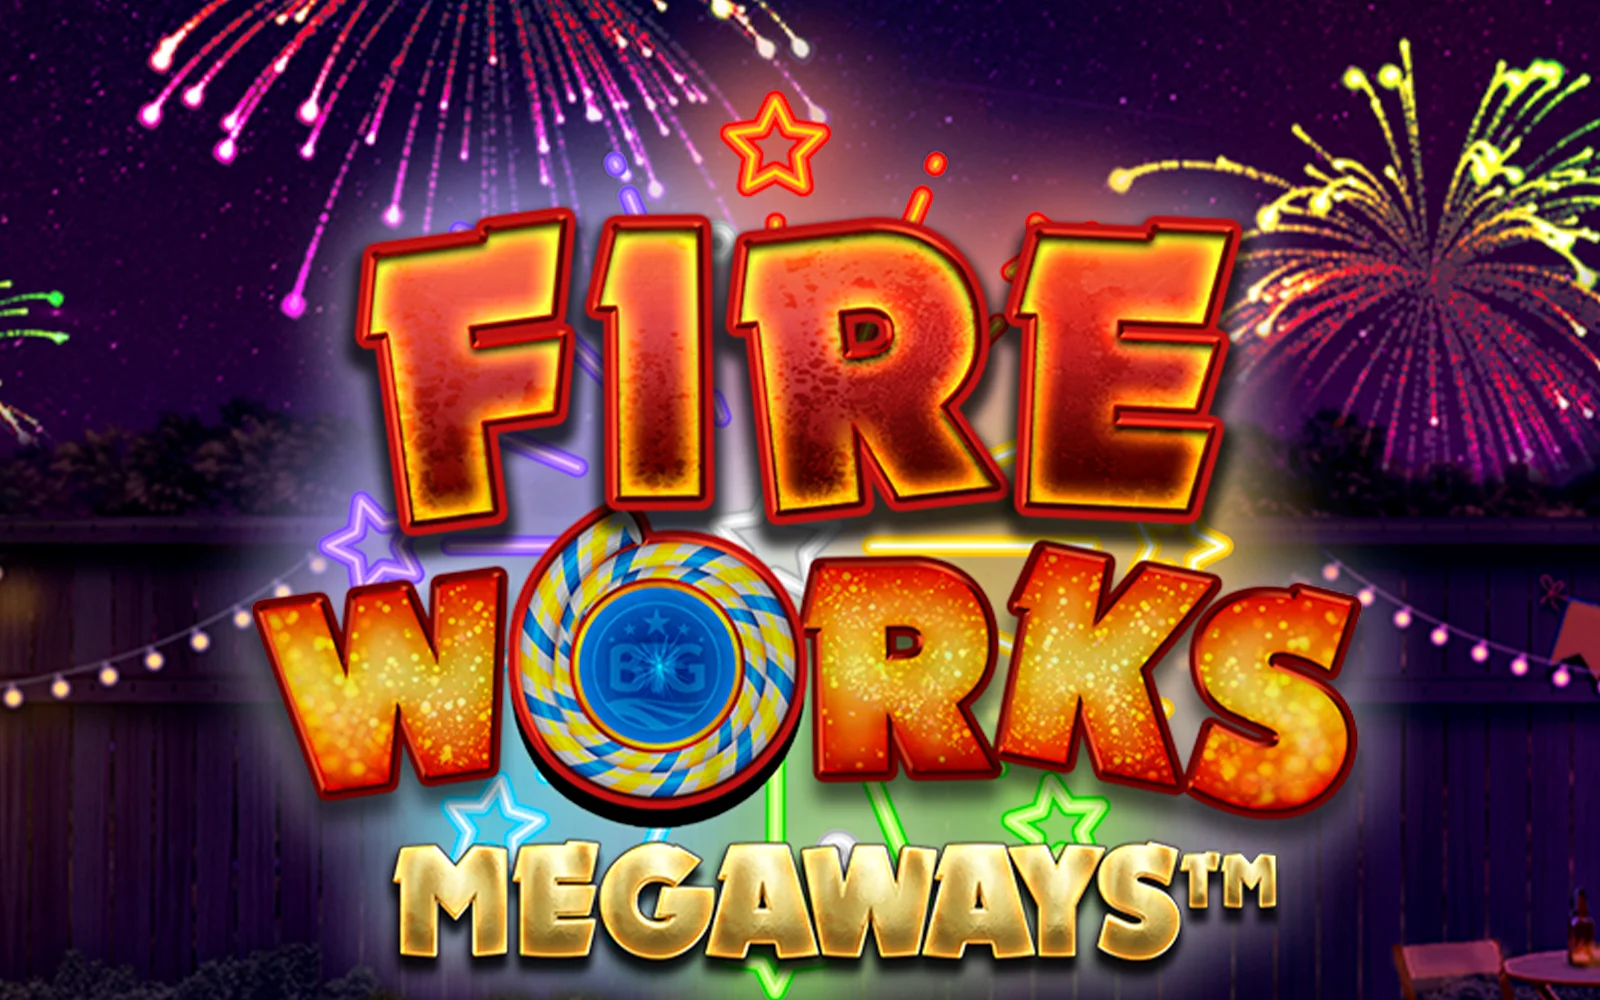 Jouer à Fireworks Megaways sur le casino en ligne Starcasino.be